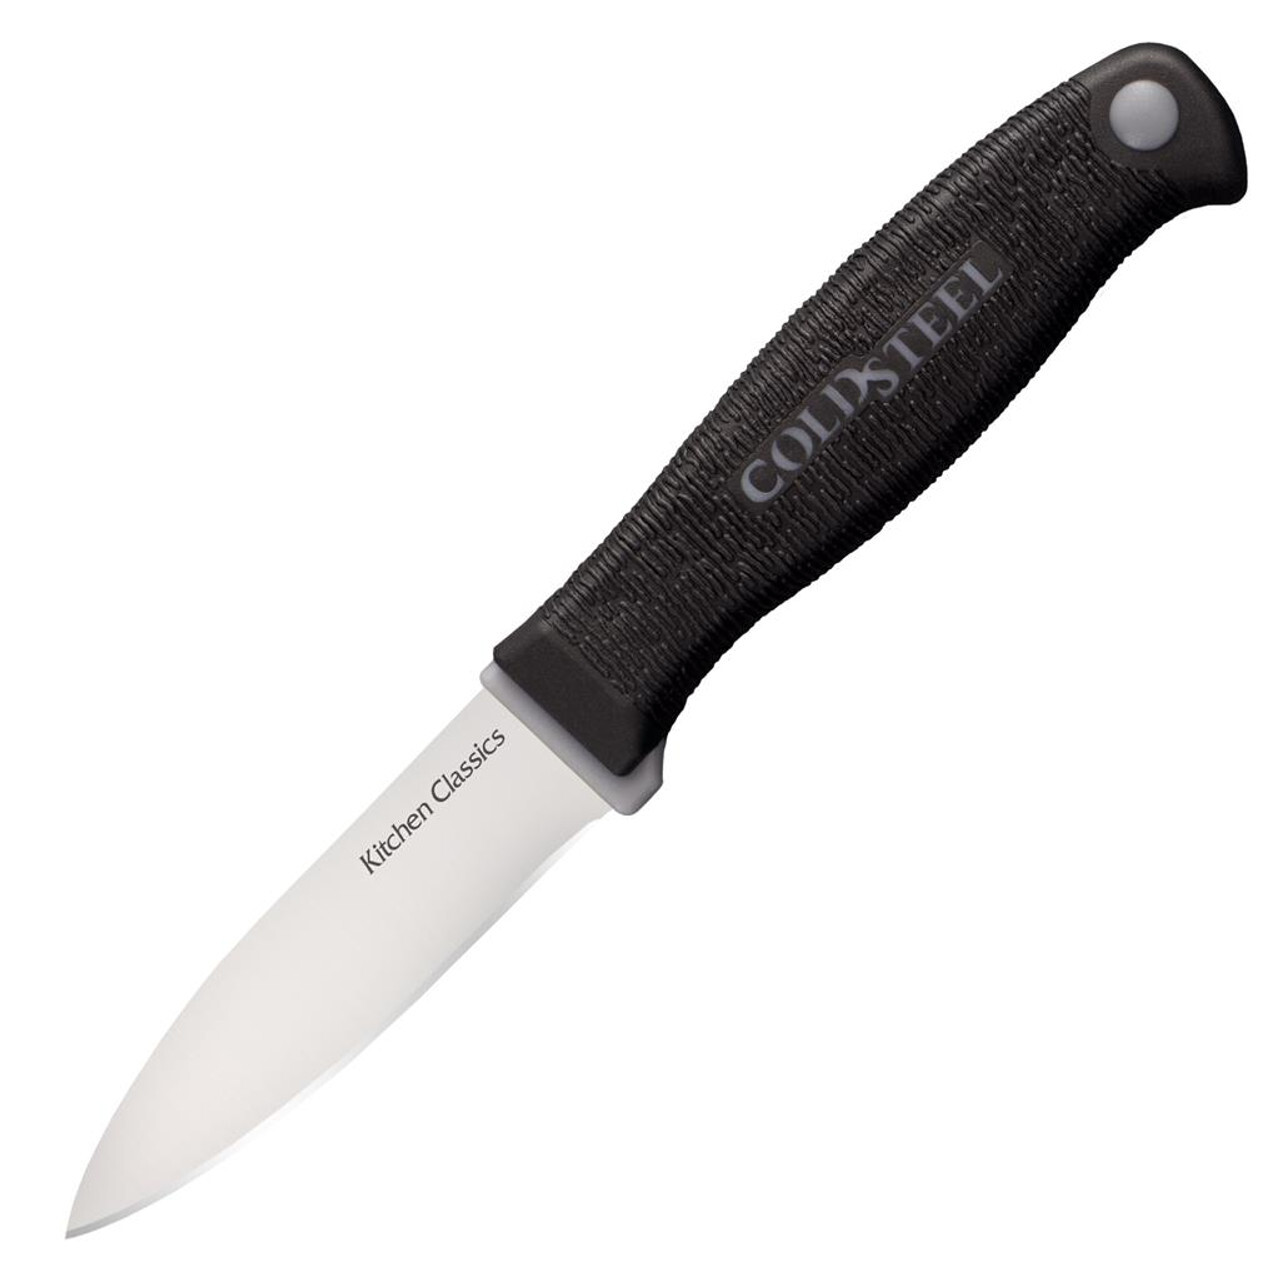 Нож овощной Paring knife (Kitchen Classics), 7.5 см складной нож cold steel crawford model 1 сталь 1 4116